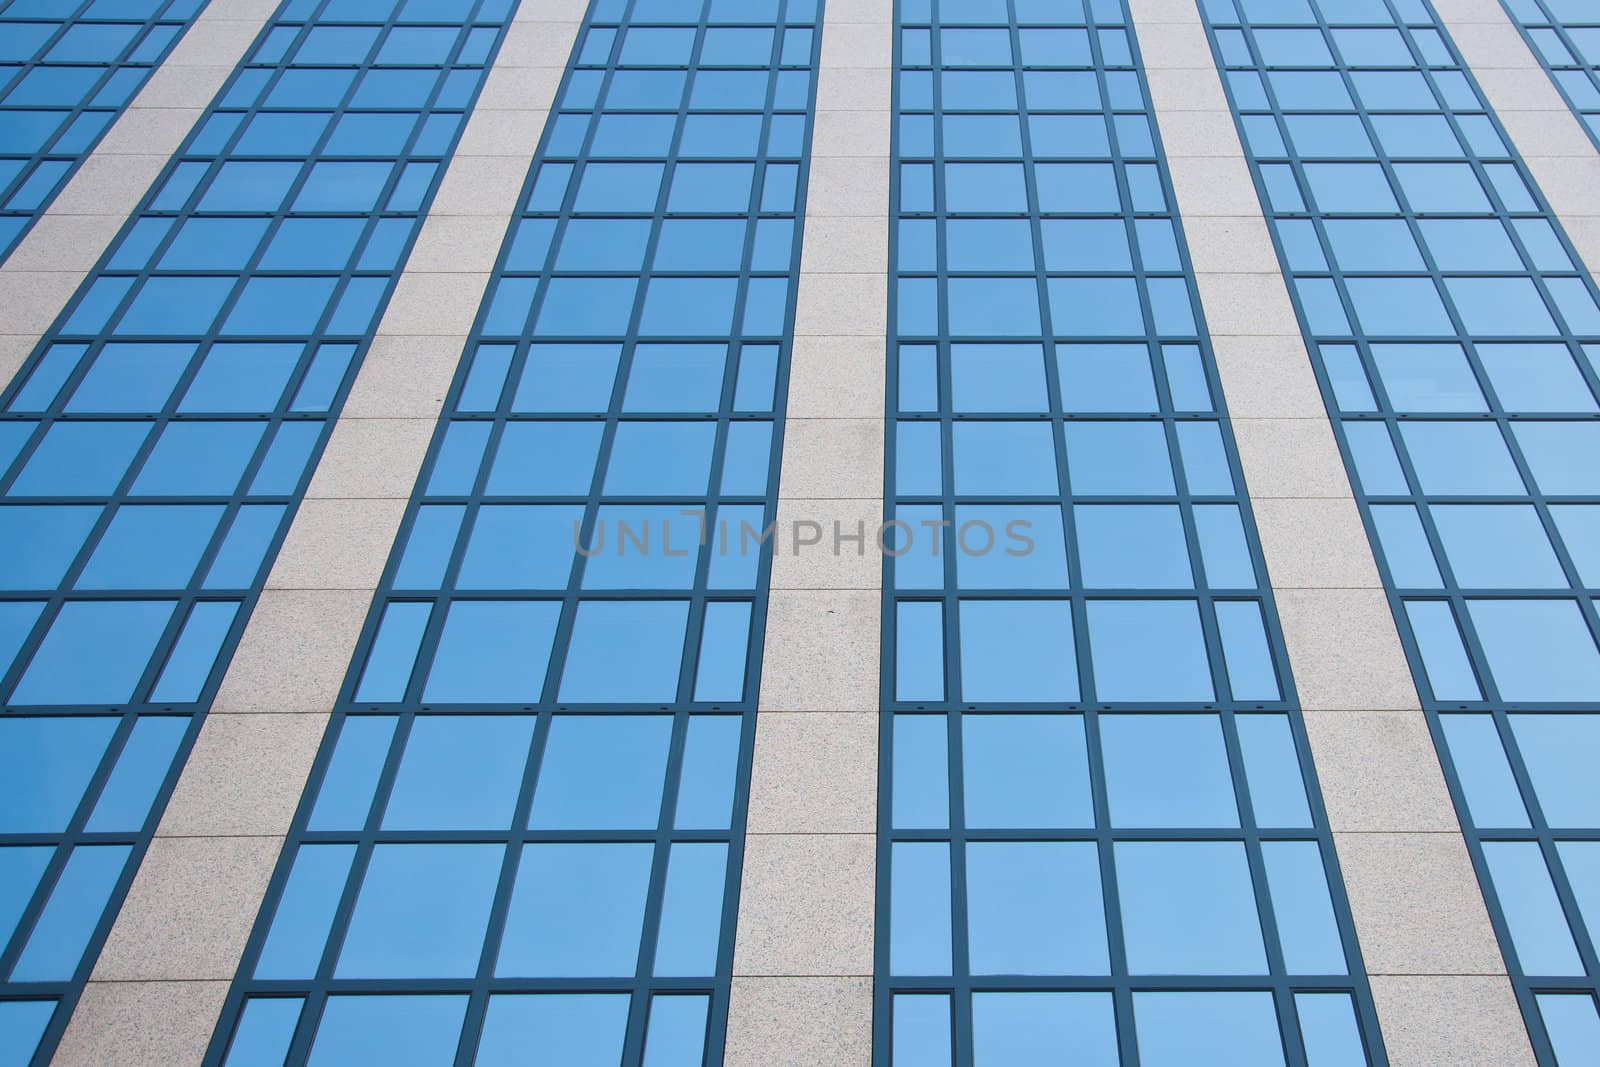 blue sky reflected in grid of windows by ahavelaar